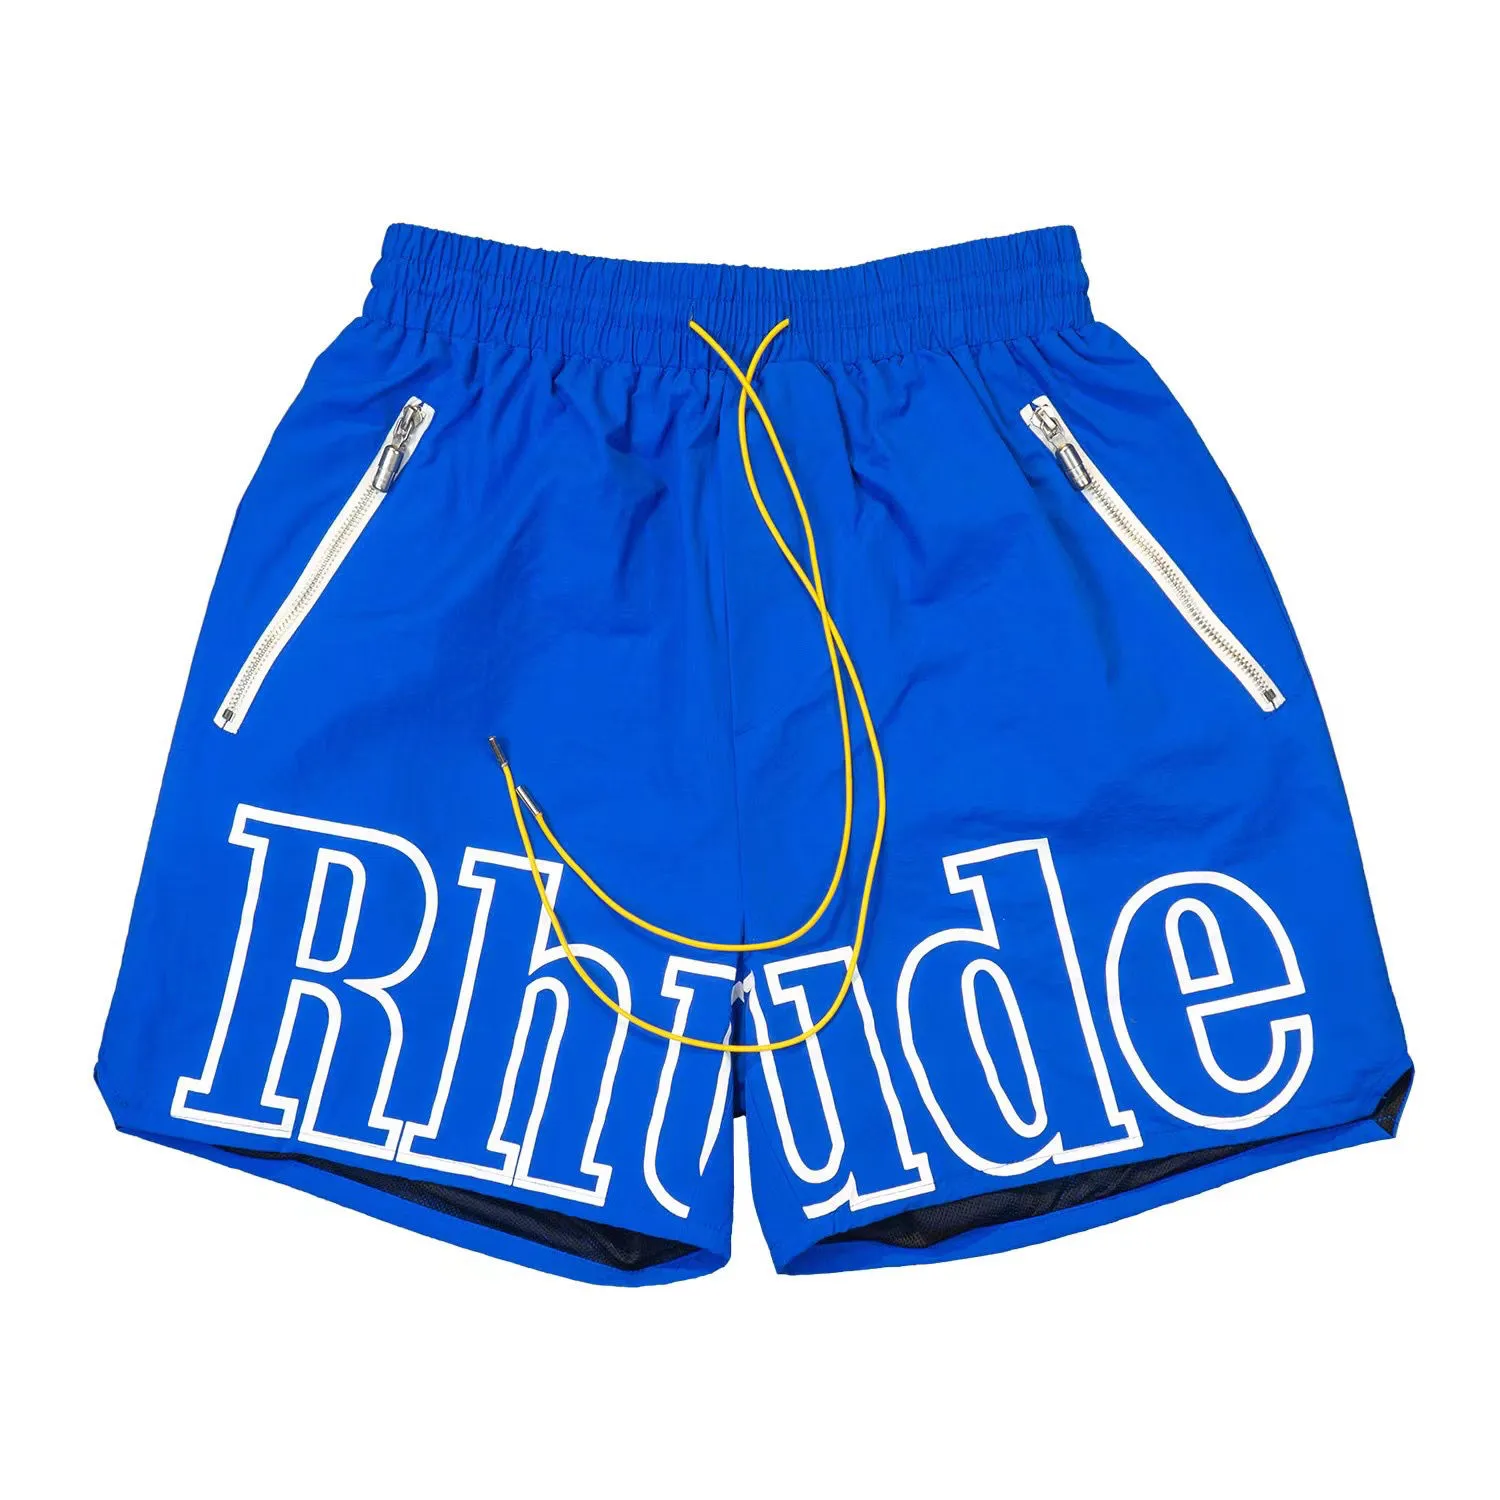 rhudes最新の色のrhudeショーツデザイナーメンズバスケットボールショートパンツルクサ夏ビーチパームレターメッシュストリートファッションスウェットパンツ最高品質170